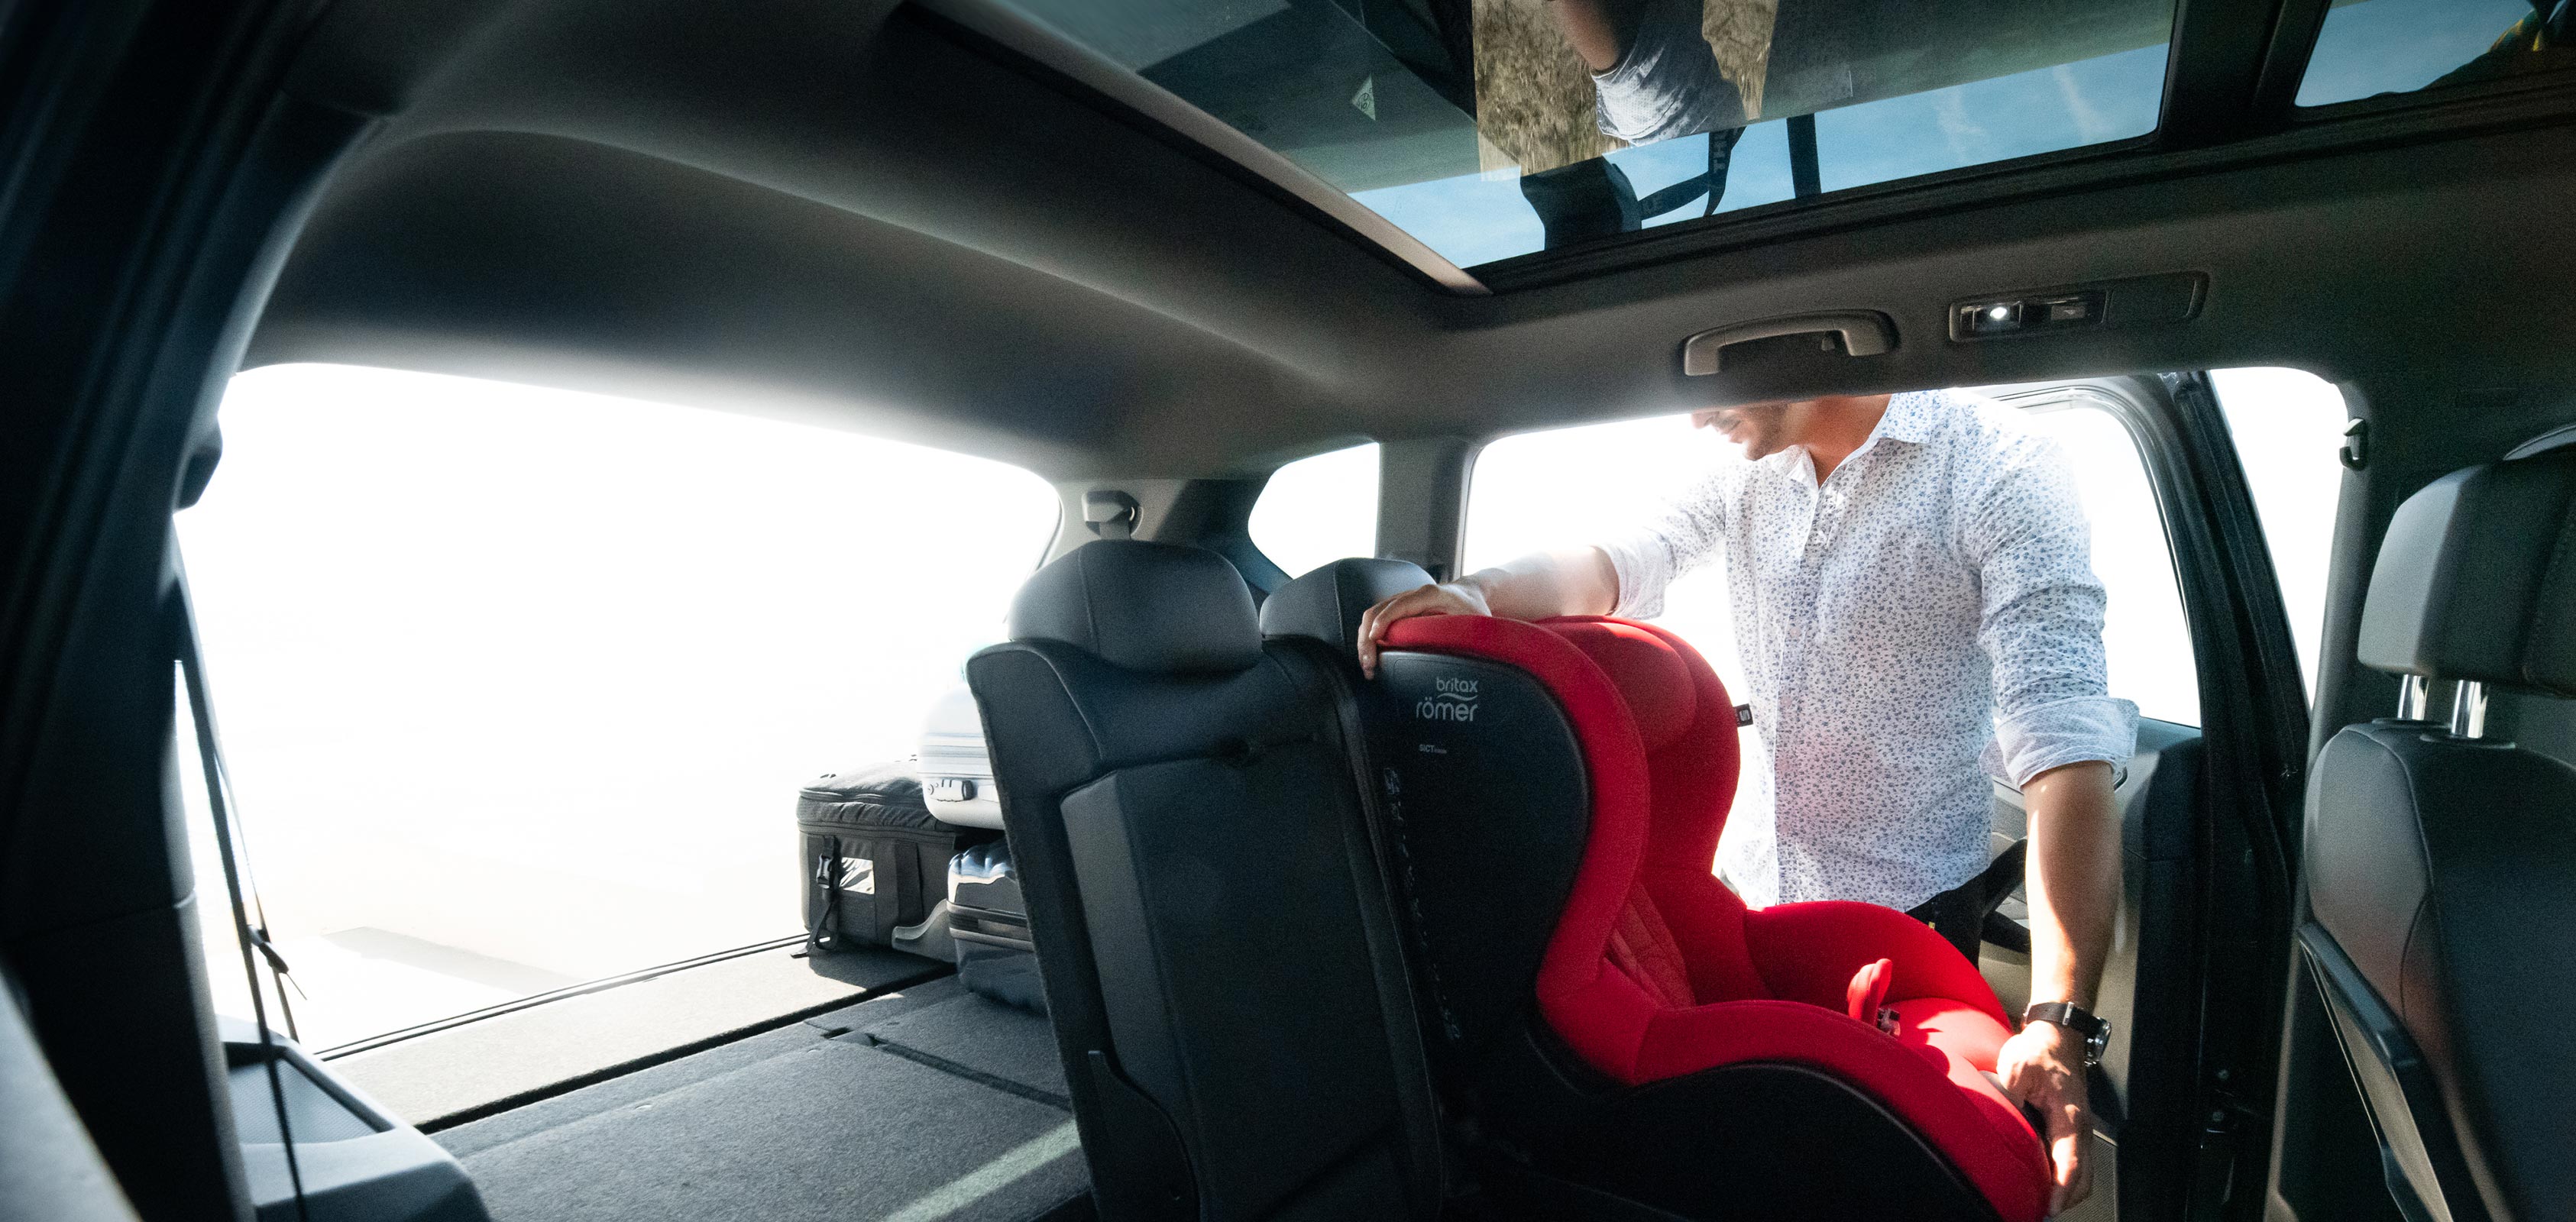 SEAT Tarraco SUV seguridad presenta una vida urbana sin estrés